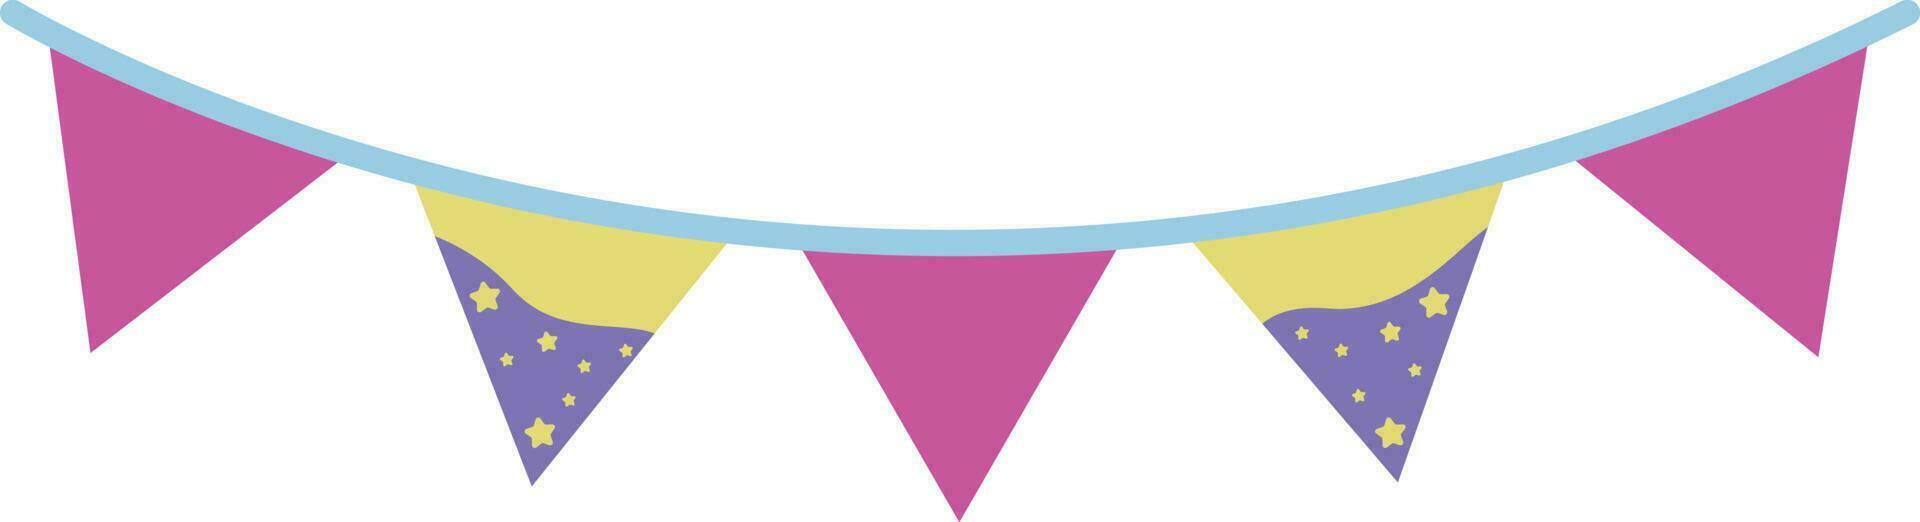 triangolo colorato carino festa bandiere illustrazione speciale stile vettore